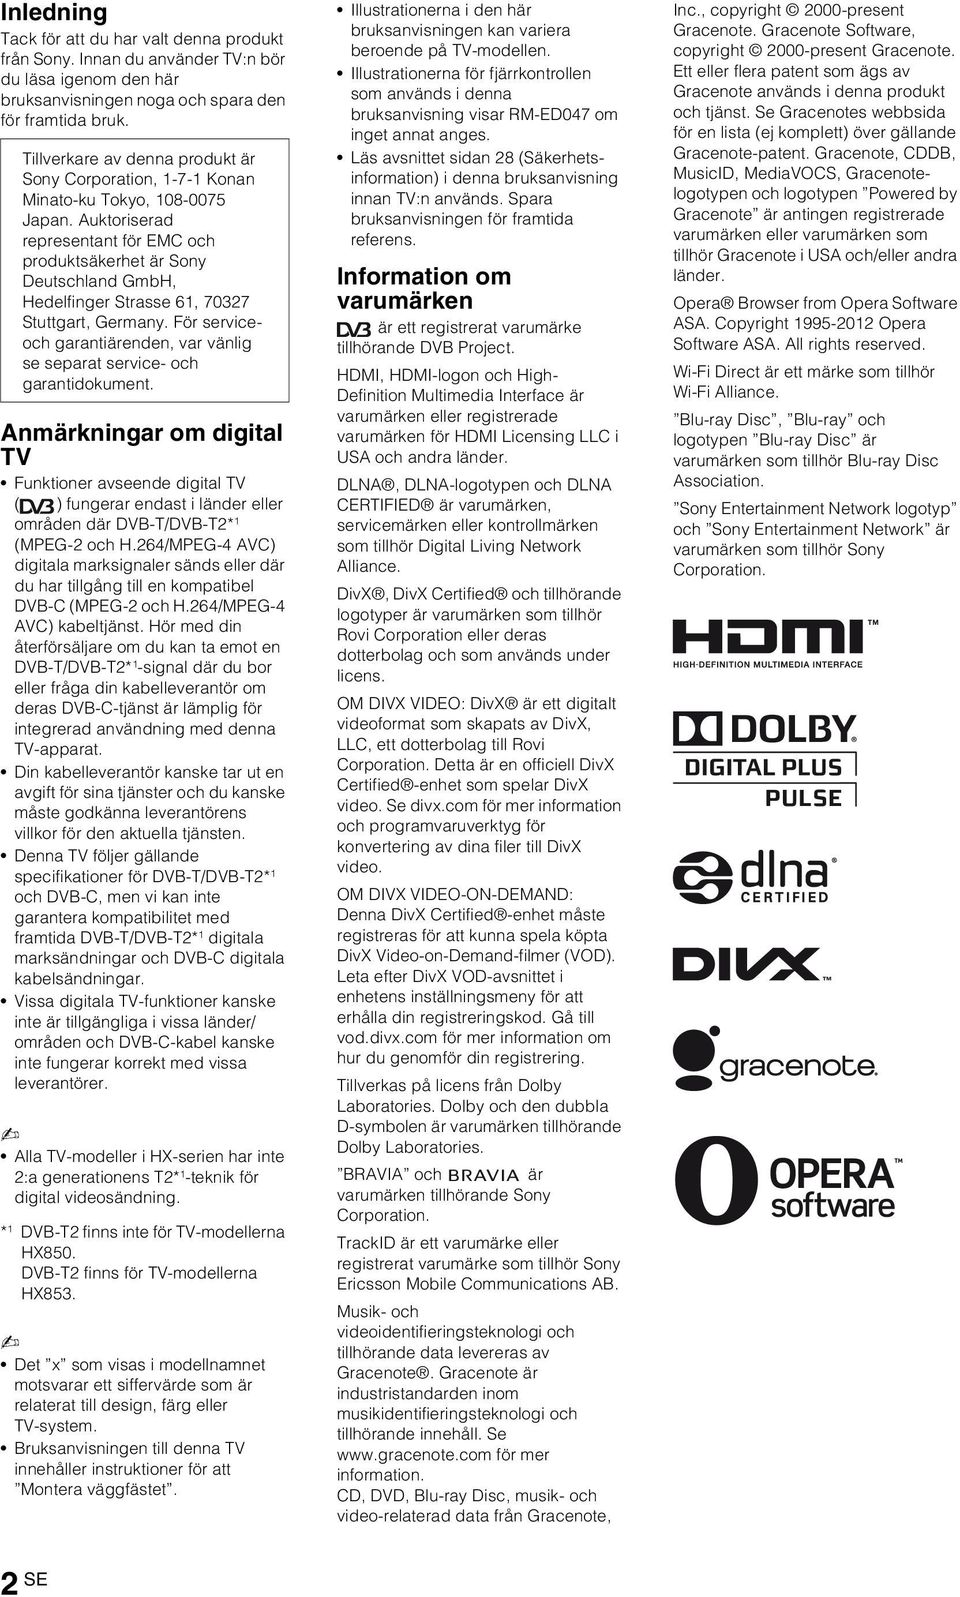 Auktoriserad representant för EMC och produktsäkerhet är Sony Deutschland GmbH, Hedelfinger Strasse 61, 70327 Stuttgart, Germany.